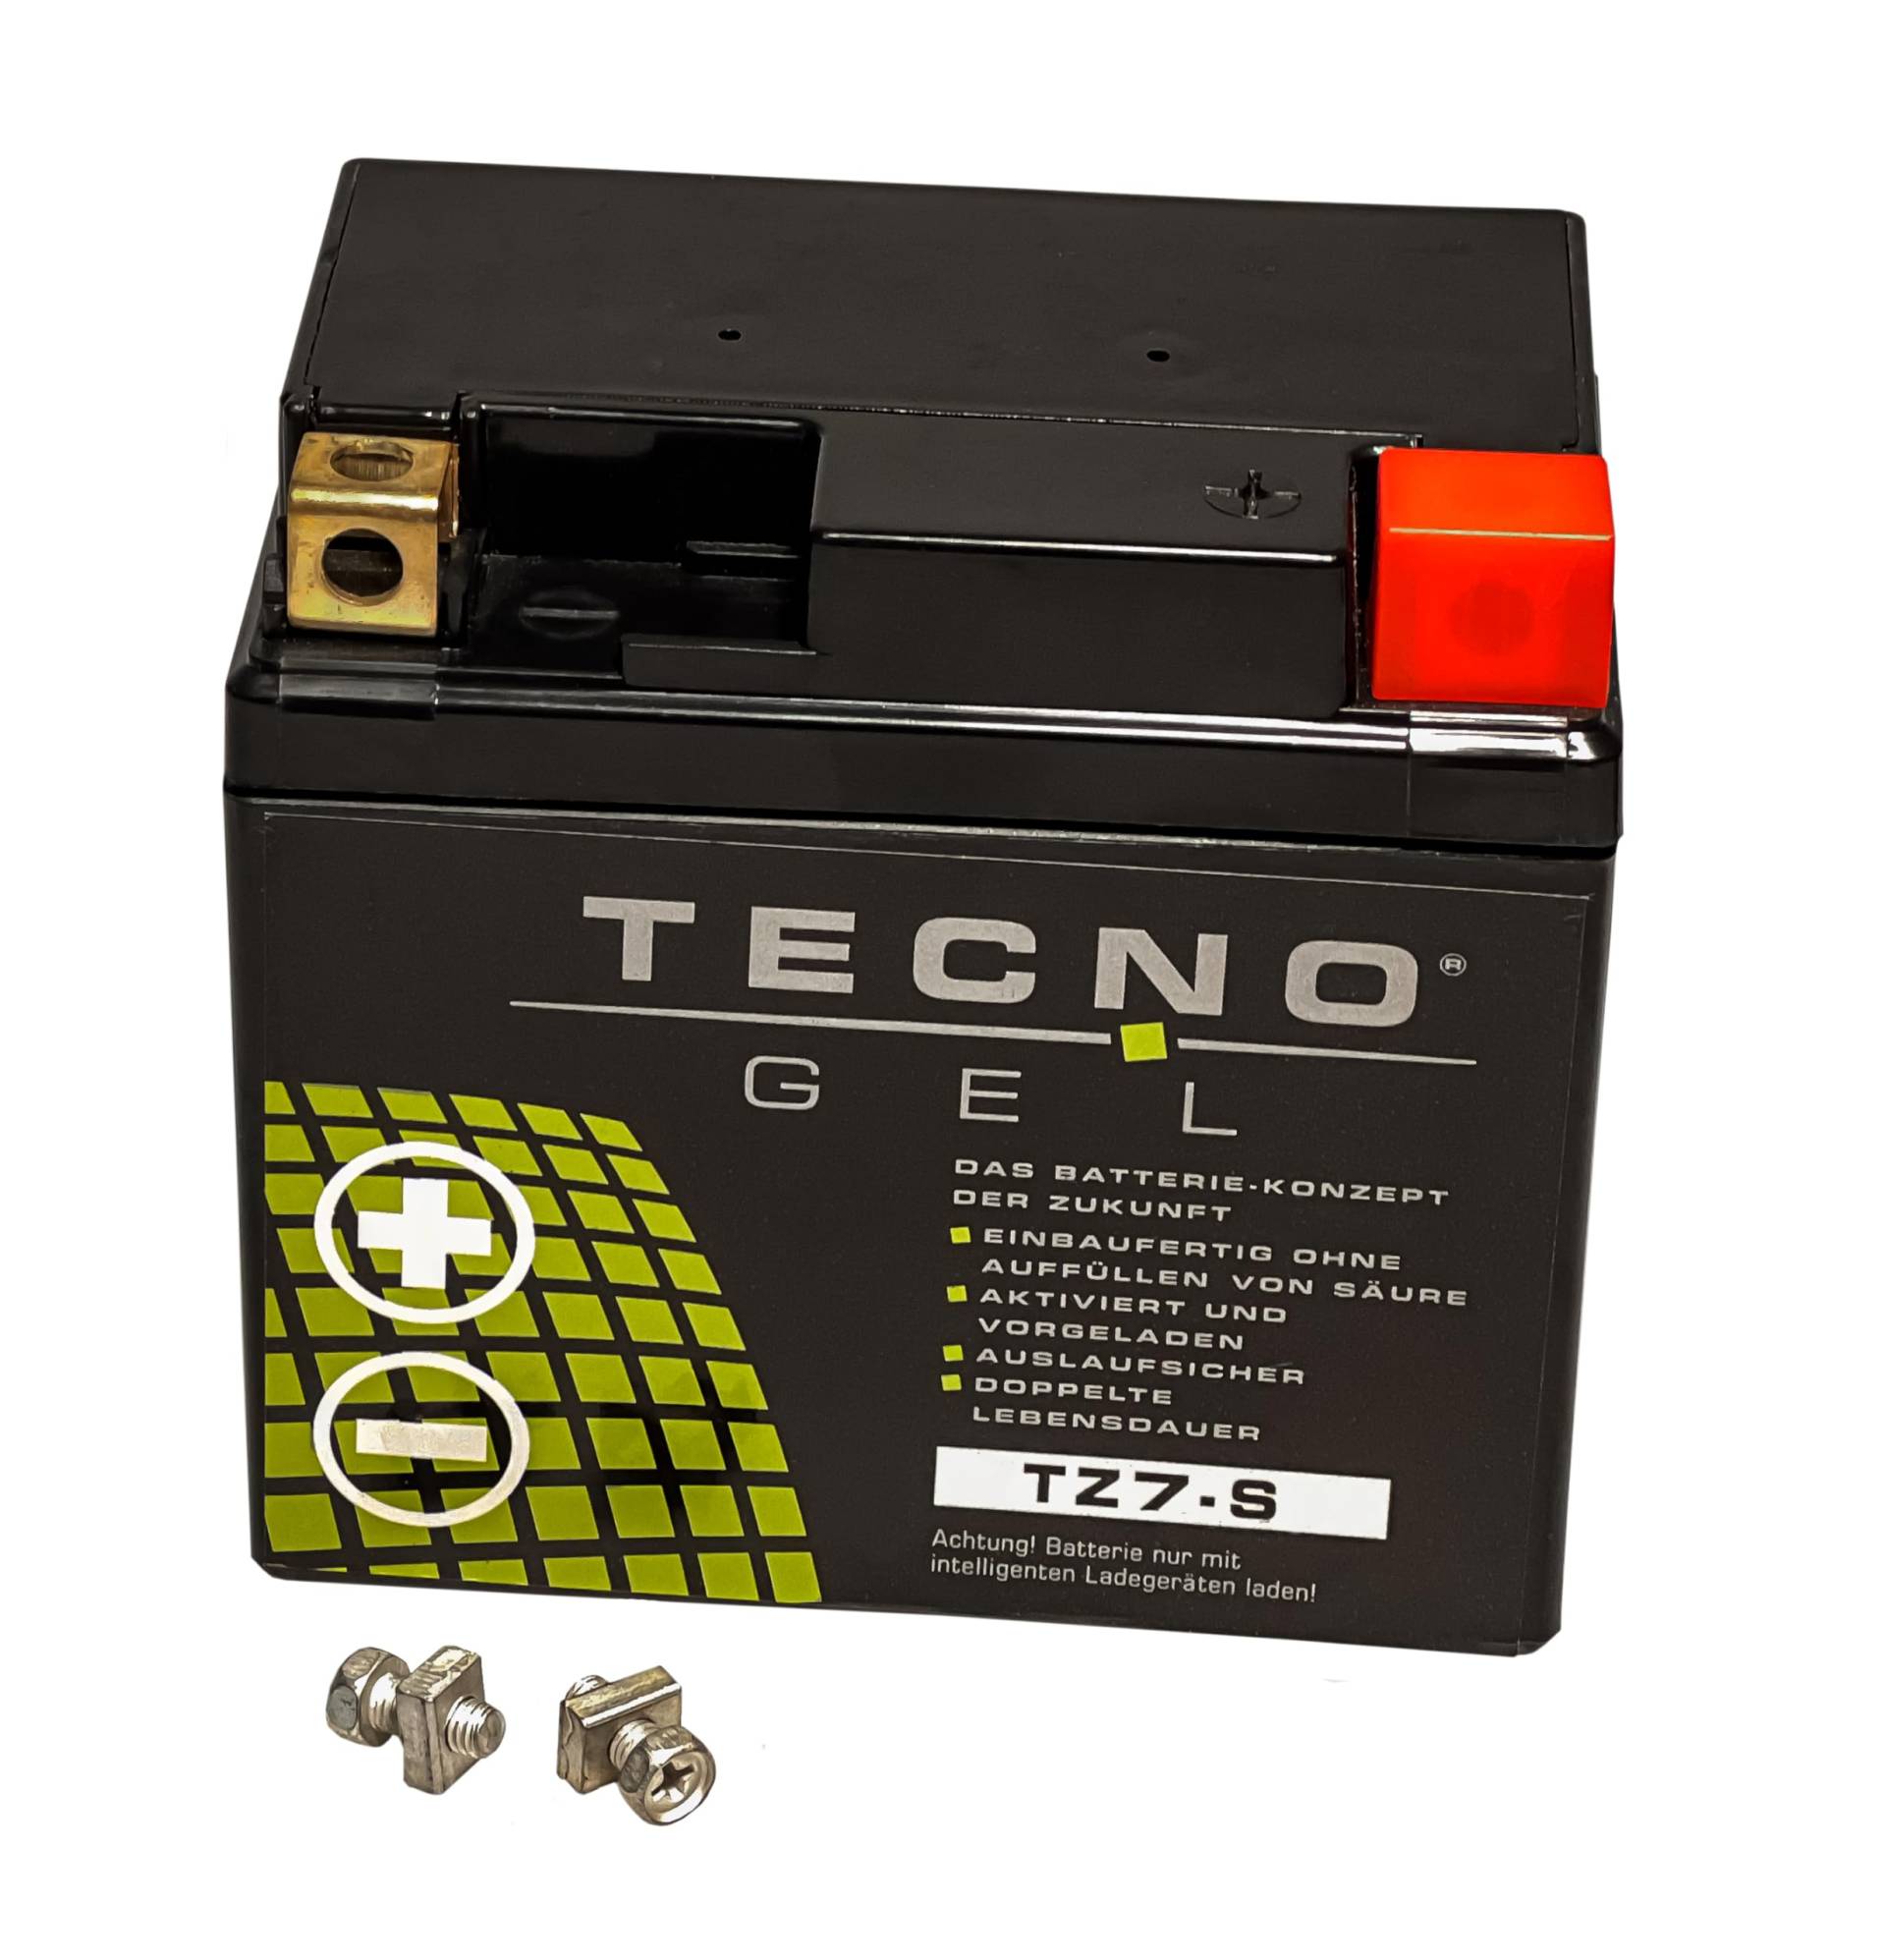 TECNO-GEL Motorrad-Batterie für YTZ7-S, 12V Gel-Batterie 6Ah (DIN 50616), 114x71x106 mm von Wirth-Federn